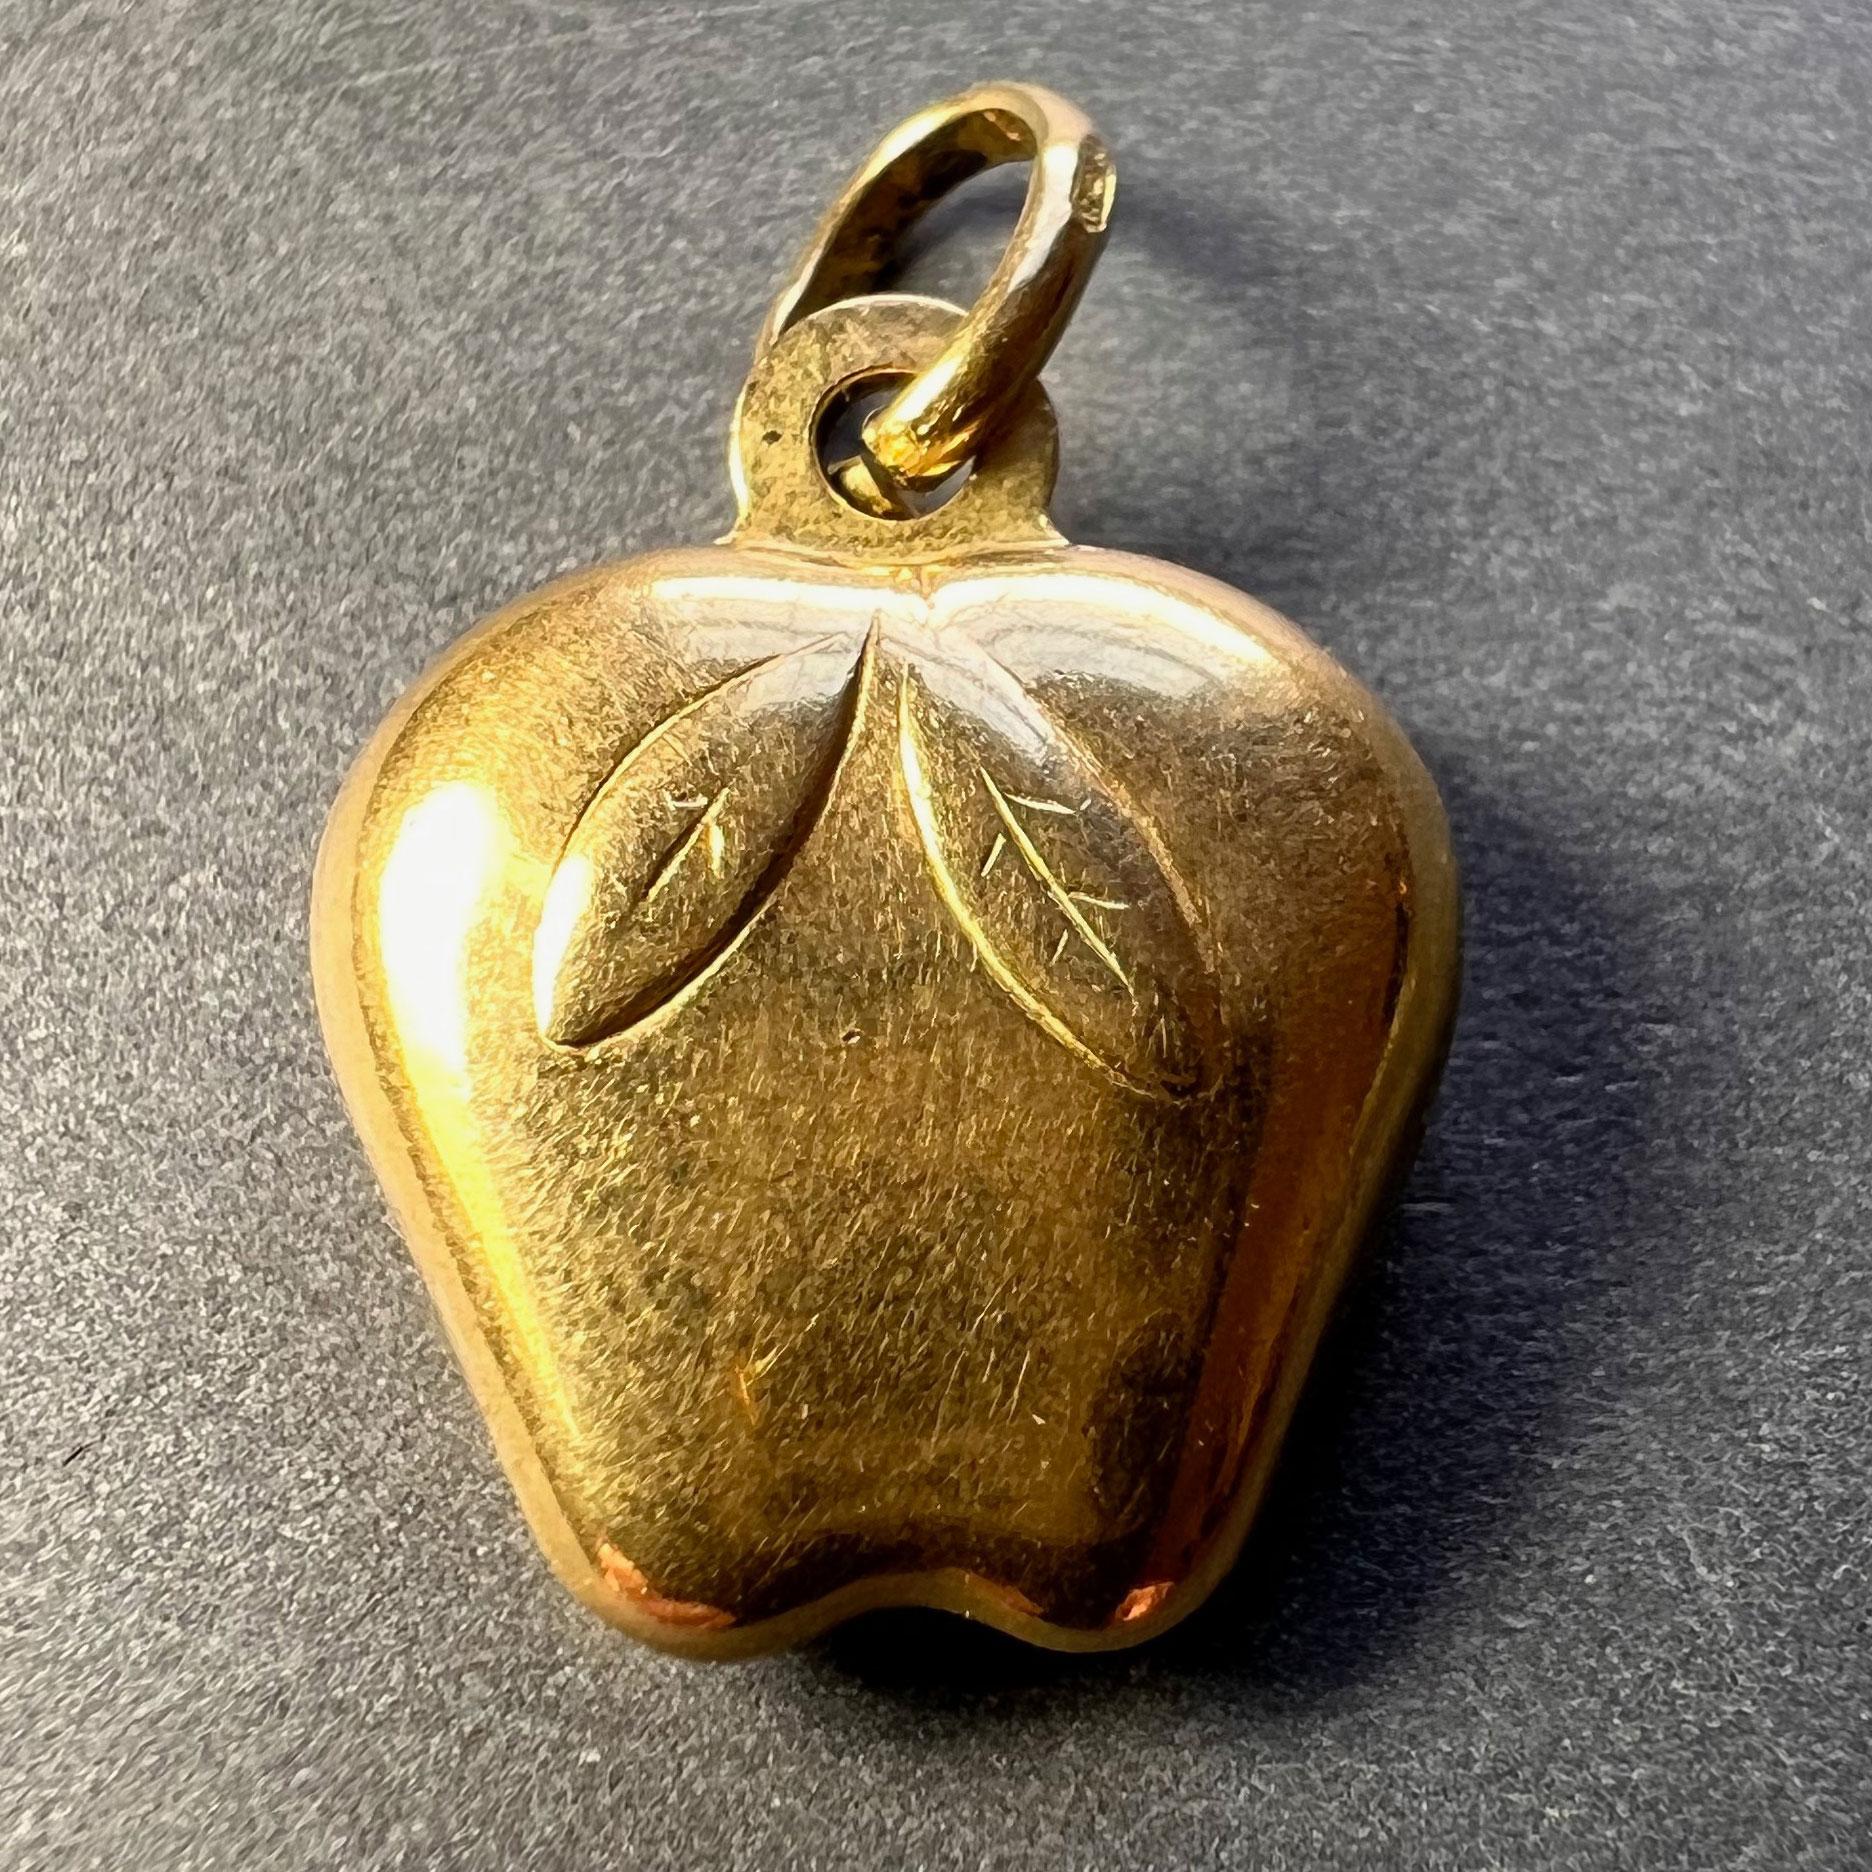 Un pendentif à breloque en or jaune 18 carats (18K) représentant une pomme. Estampillé 750 pour l'or 18 carats et 027AR pour la fabrication italienne sur la boucle.
 
Dimensions : 1.7 x 1,4 x 0,55 cm (sans l'anneau)
Poids : 1,97 grammes
